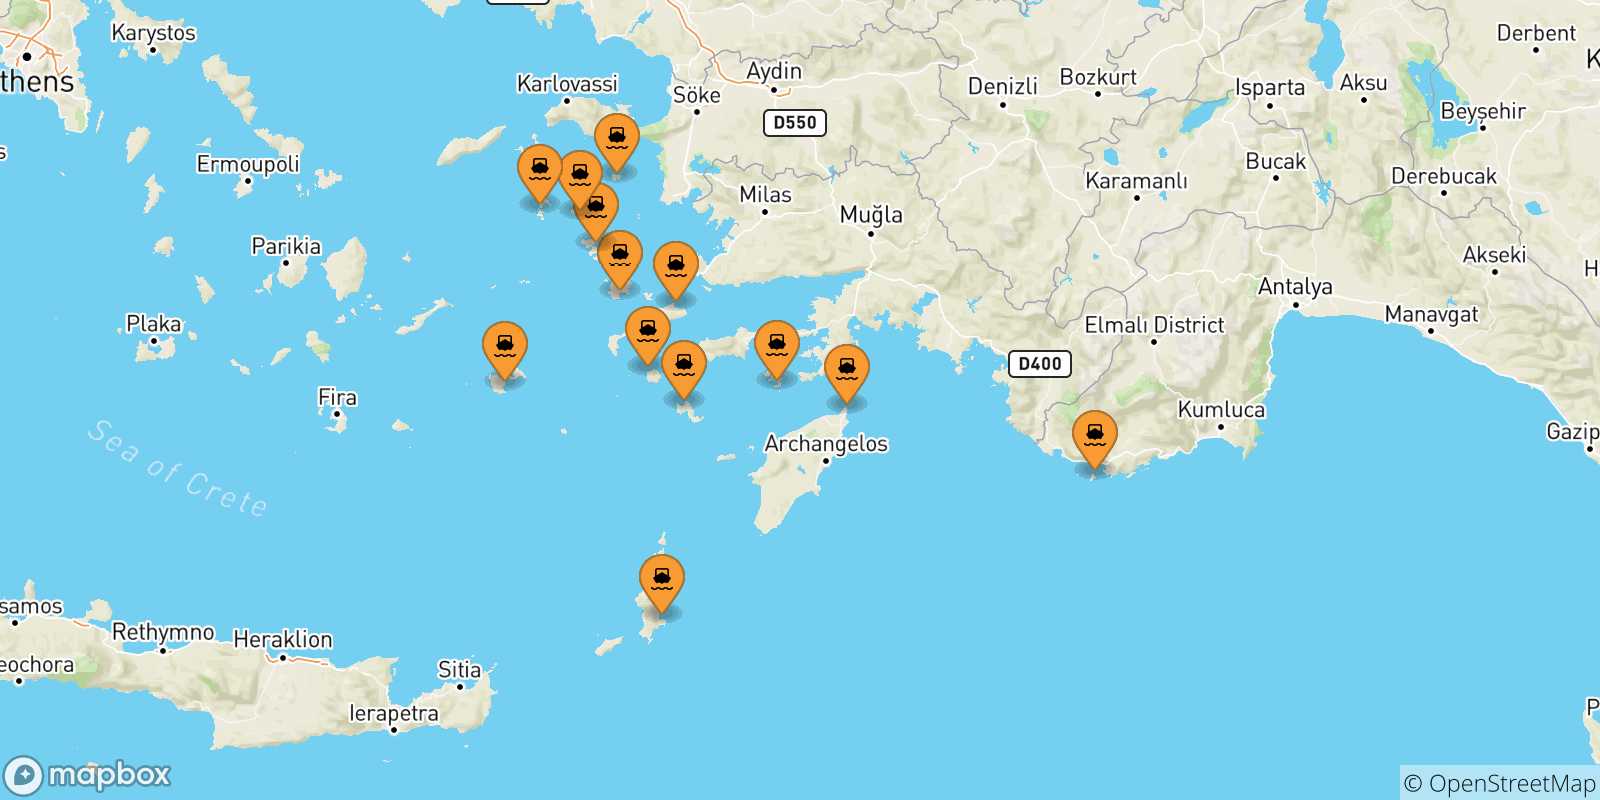 Mappa delle possibili rotte tra le Isole Dodecaneso e Symi